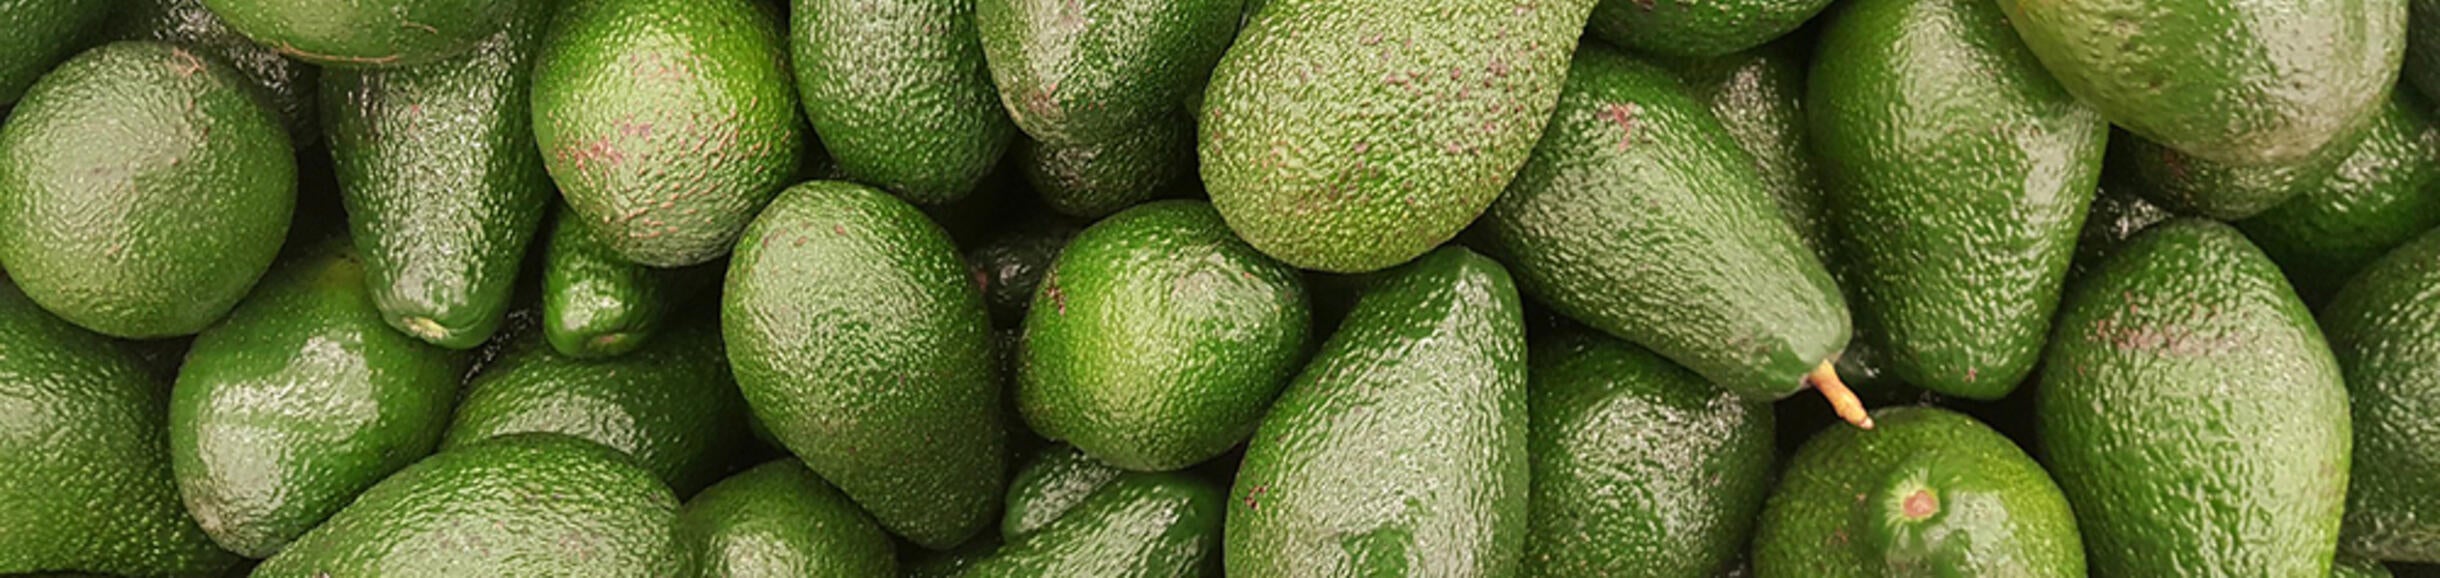 pile of avocados (c) pixabay